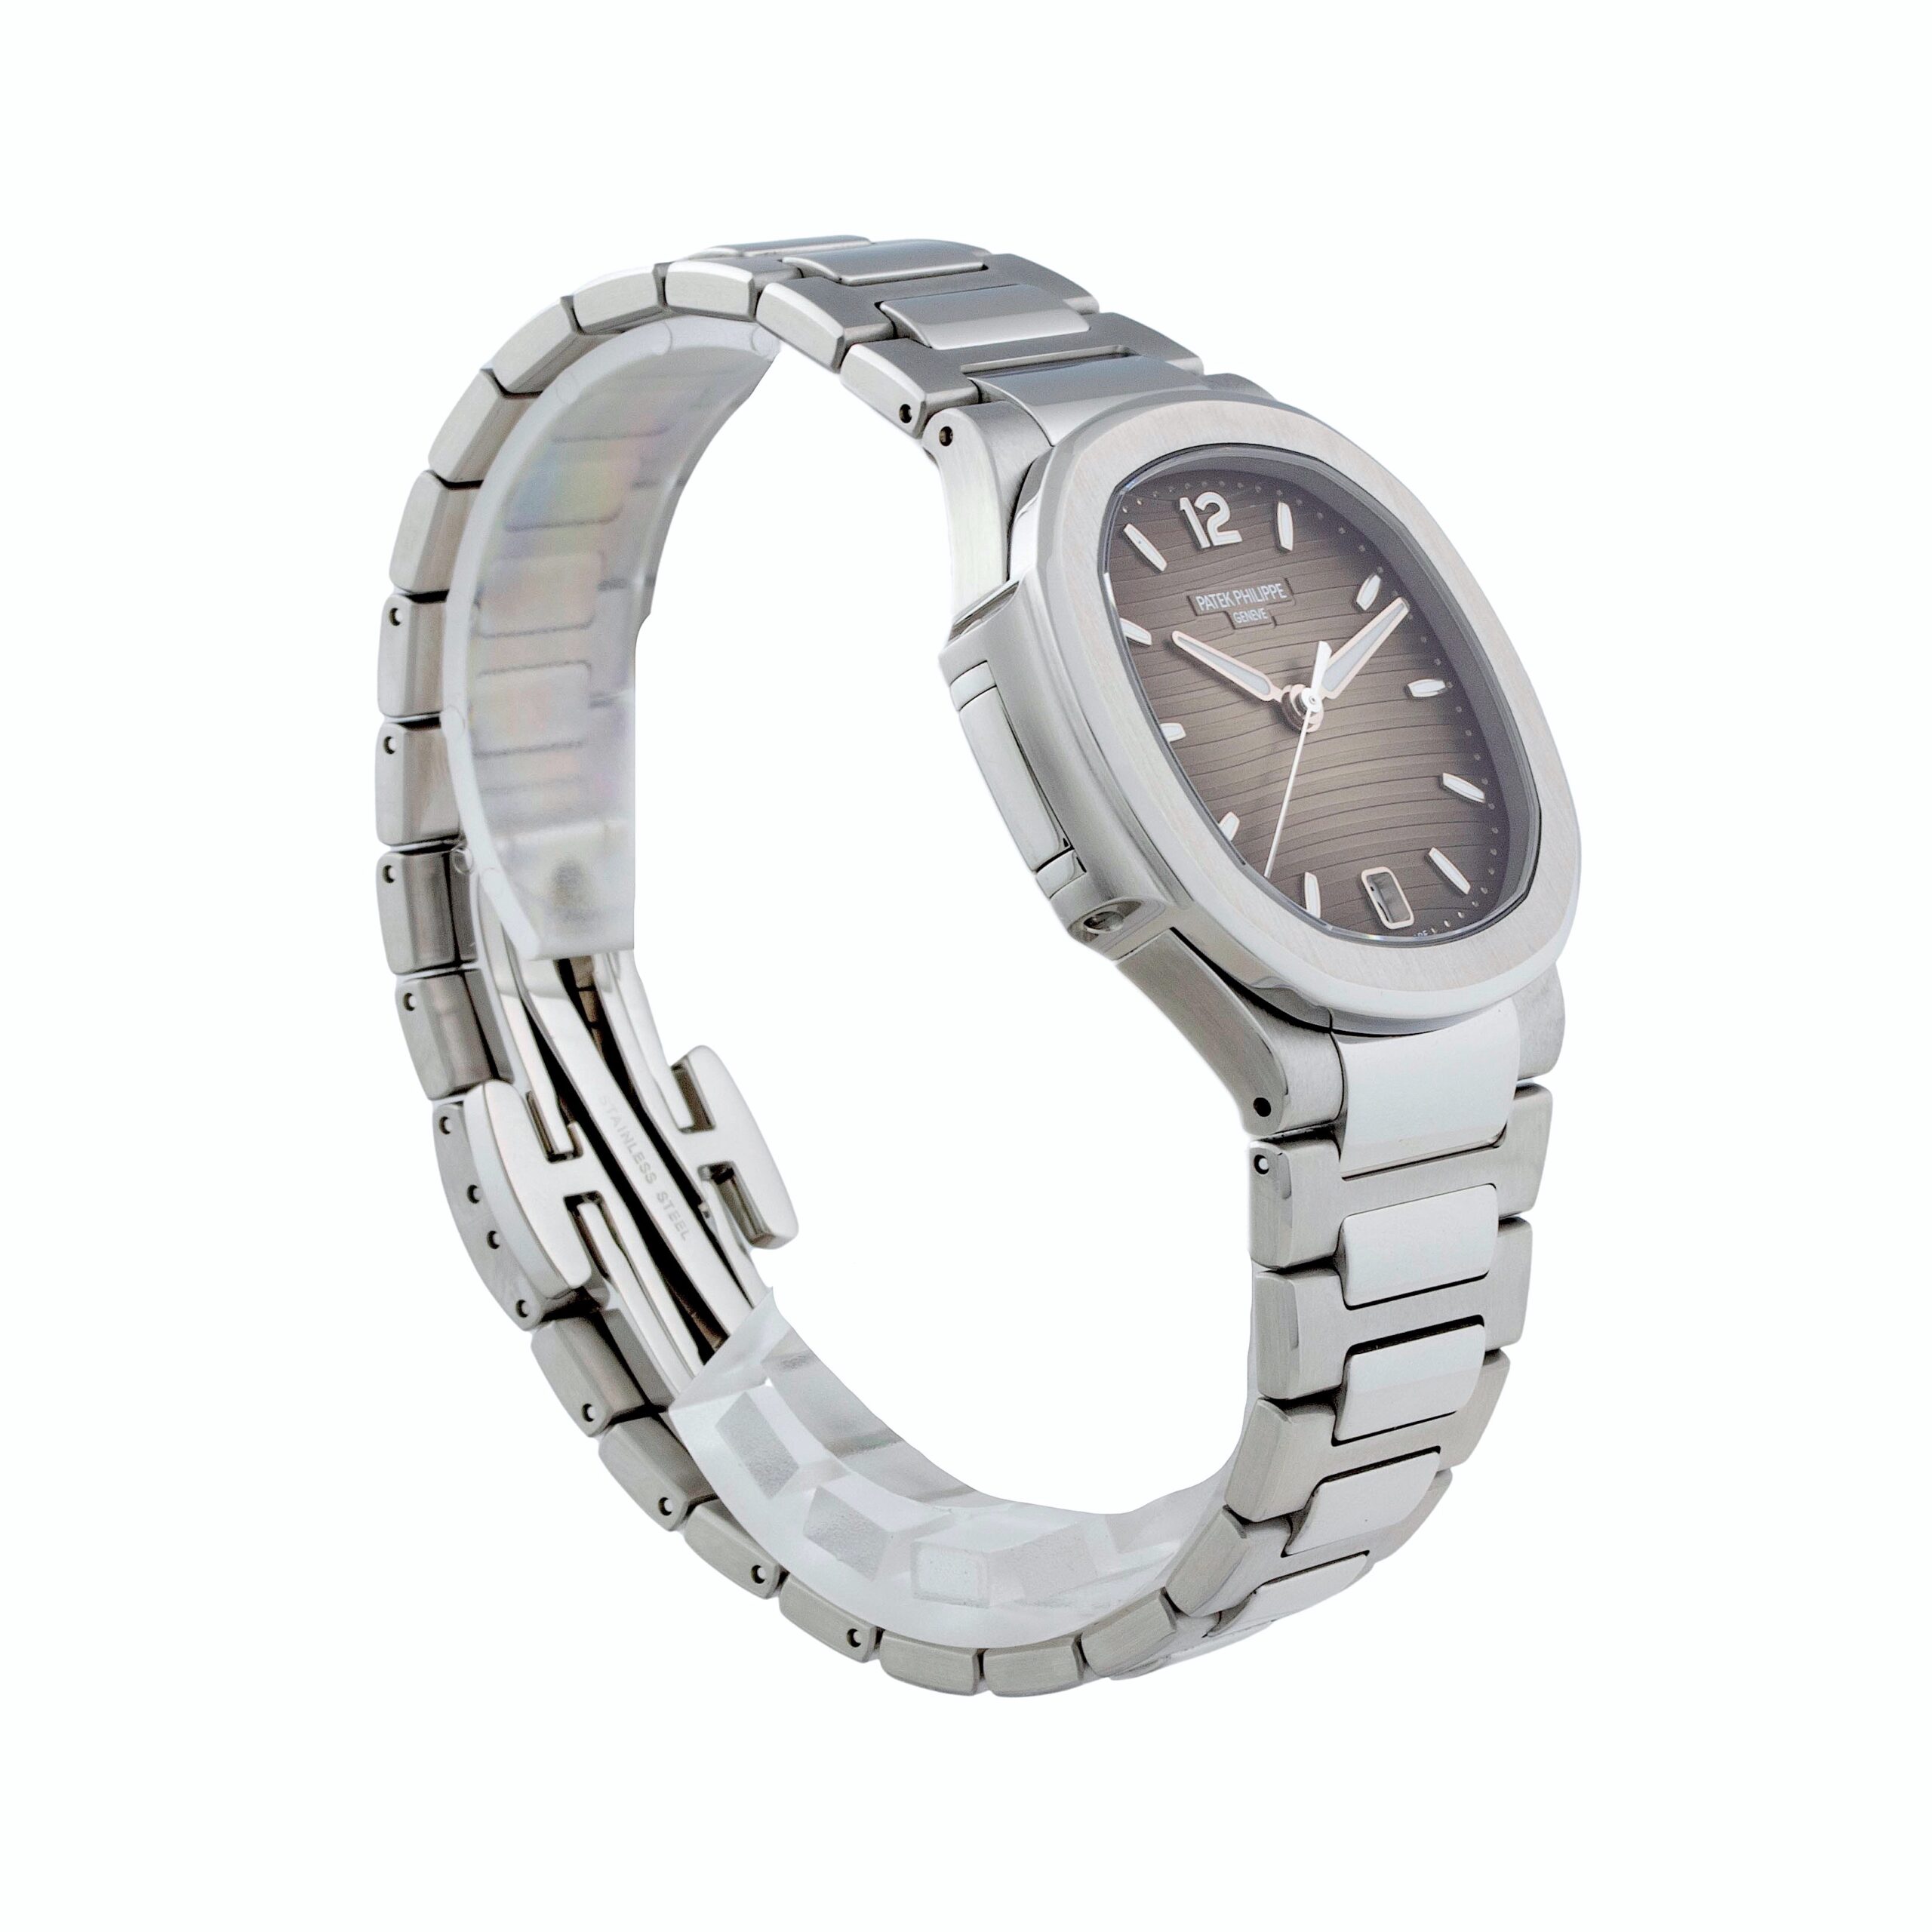 Patek Philippe Ladies Nautilus Rose Gold 35mm 7118/1R-010 | Luxury Watches